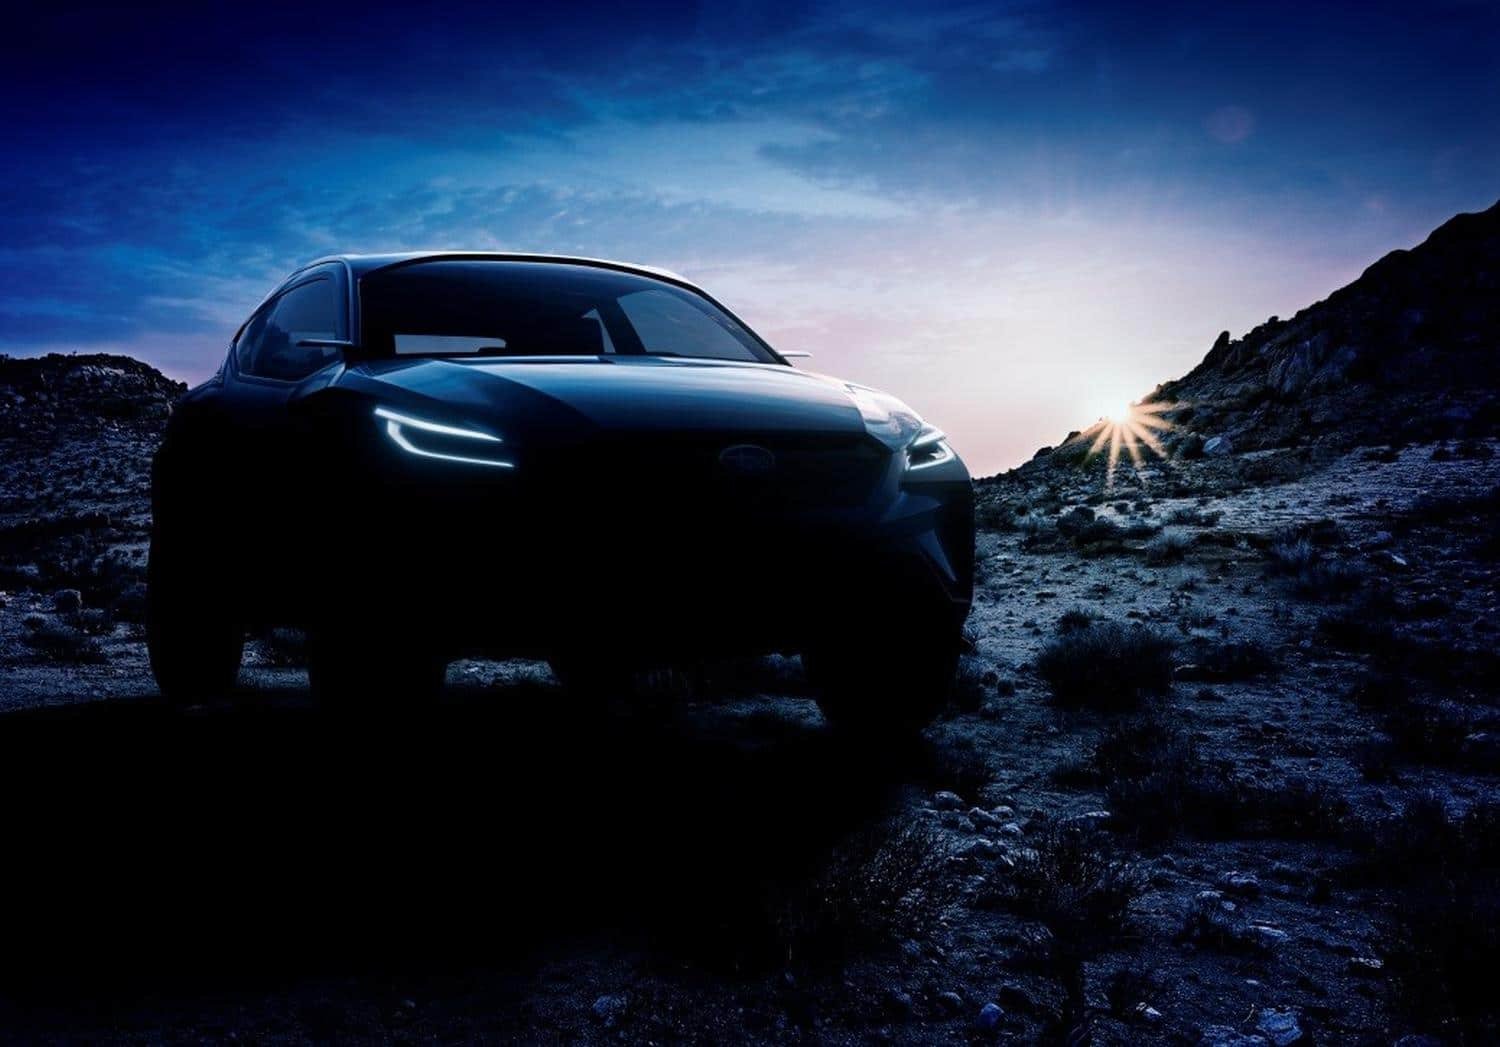 Subaru bestätigt Pläne für Elektro-SUV Evoltis noch in 2021 für Europa